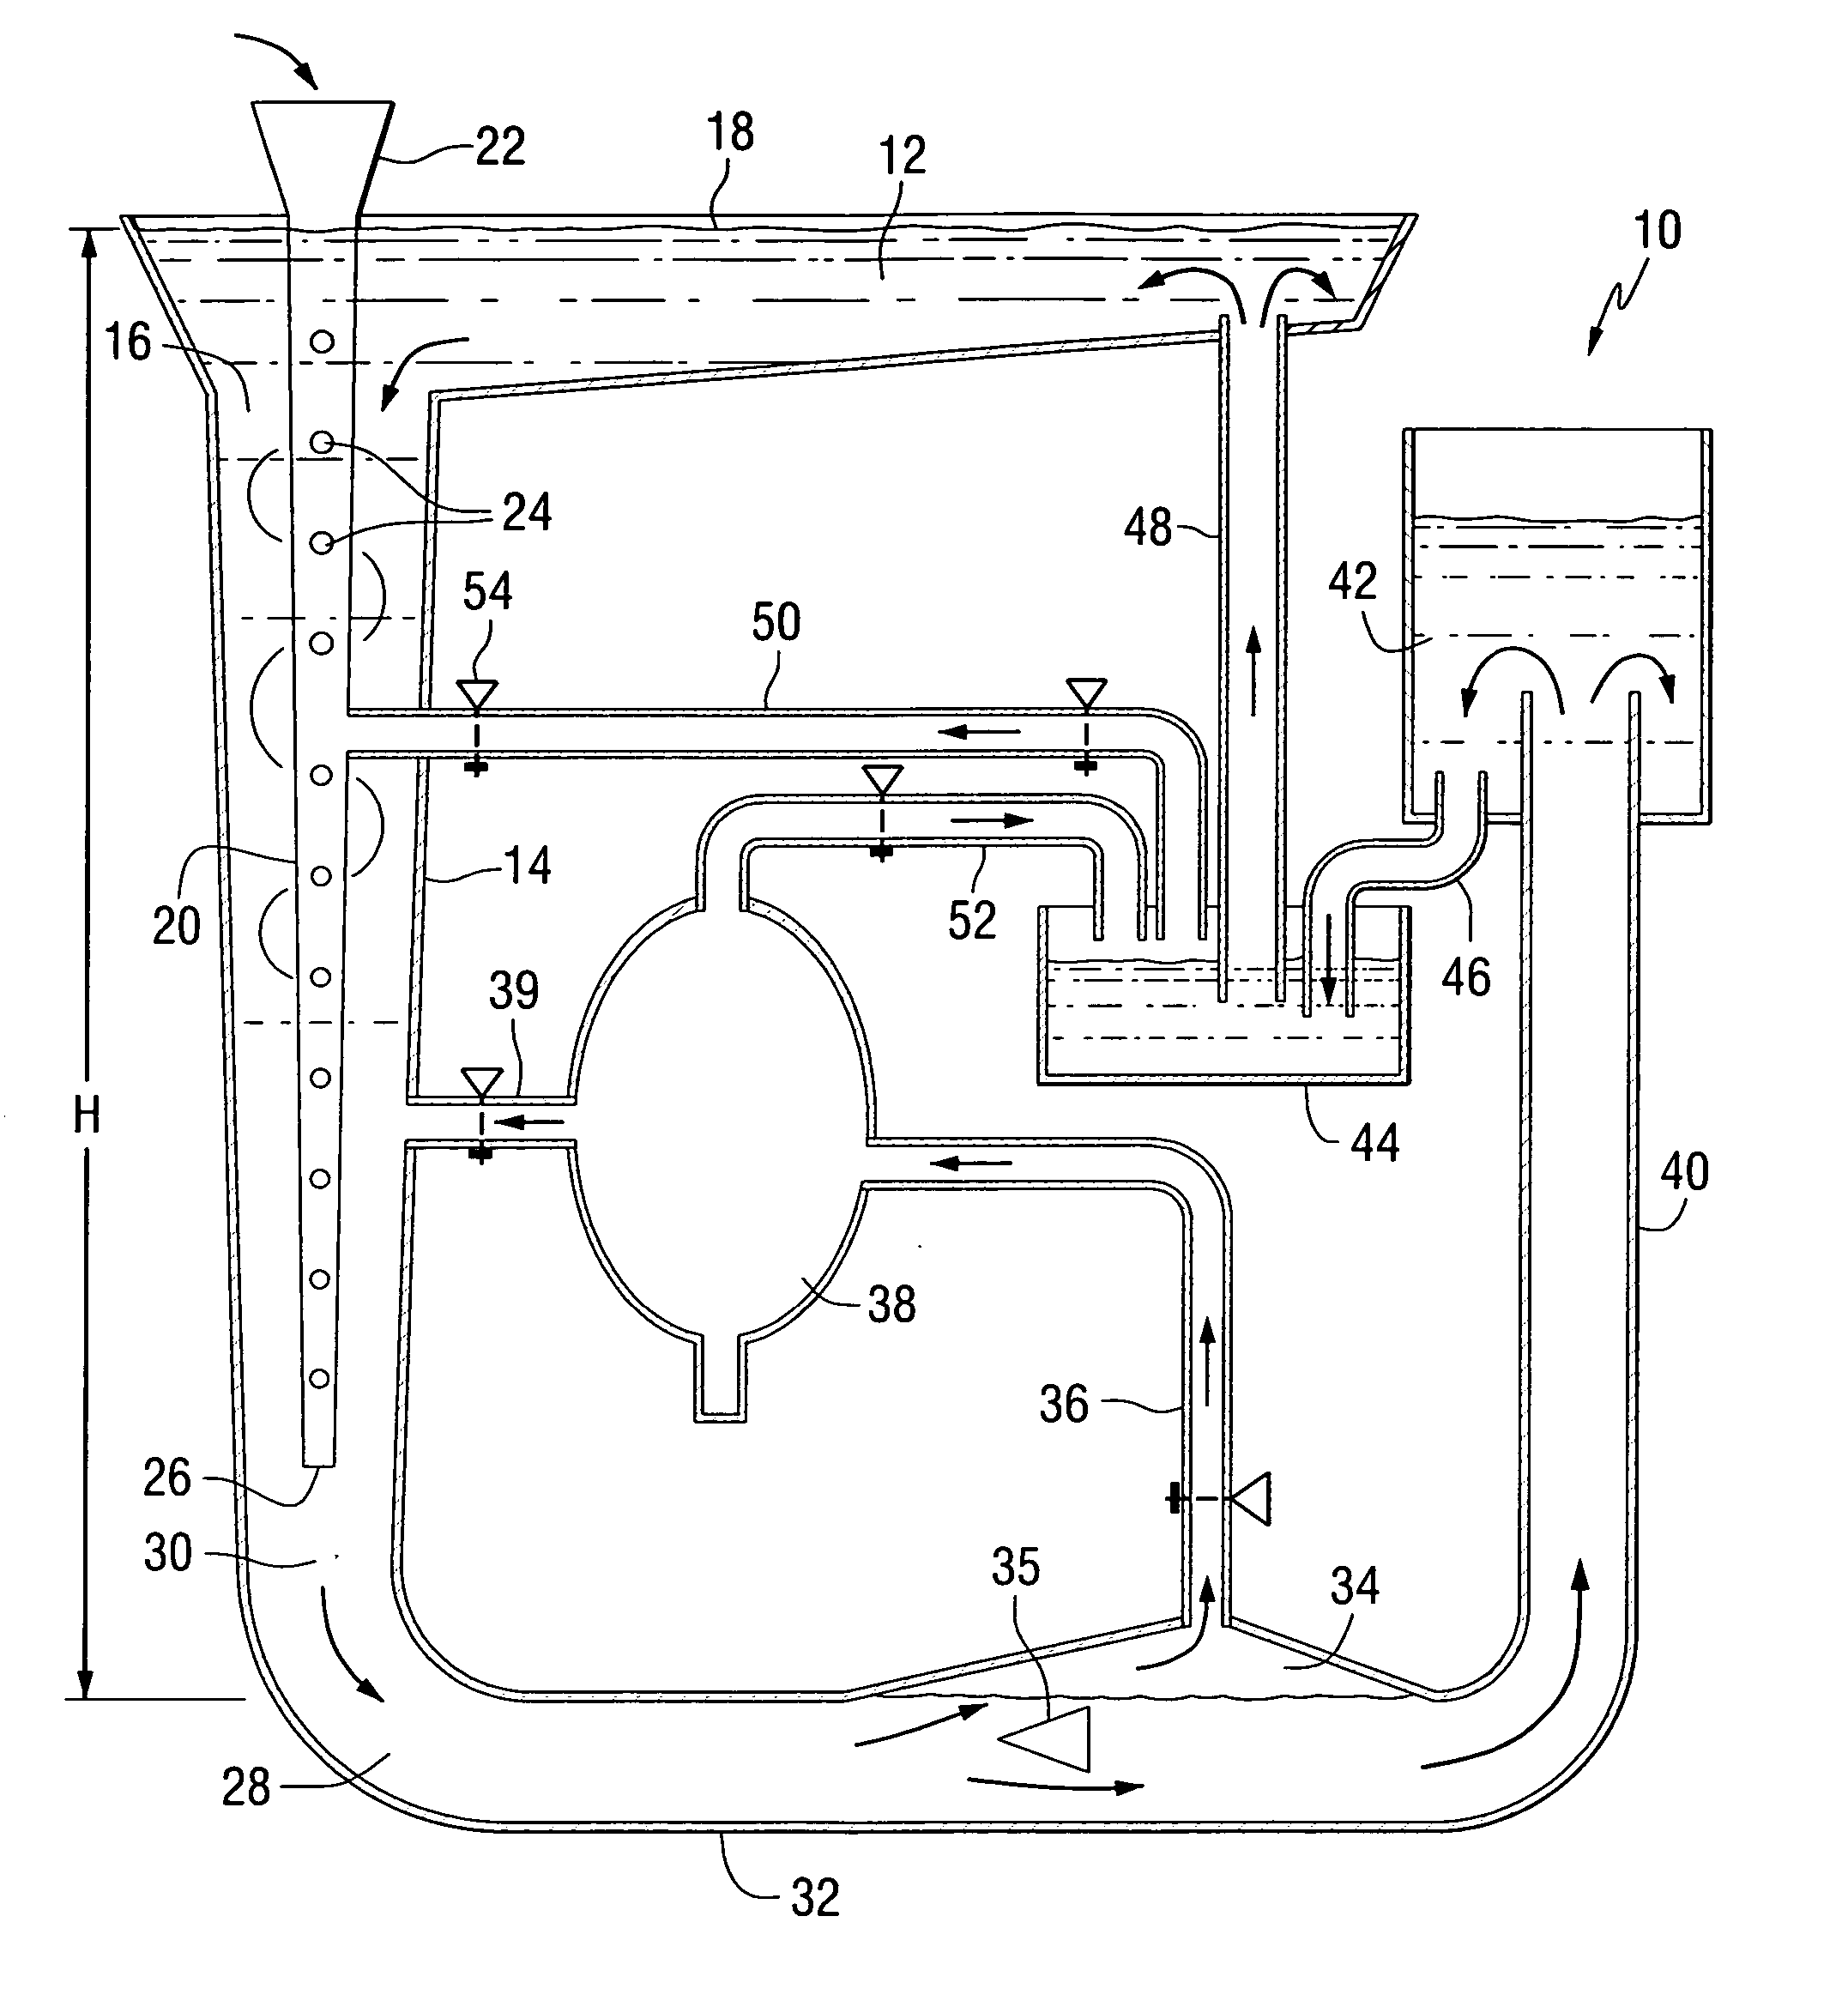 Hydraulic liquid pumping system